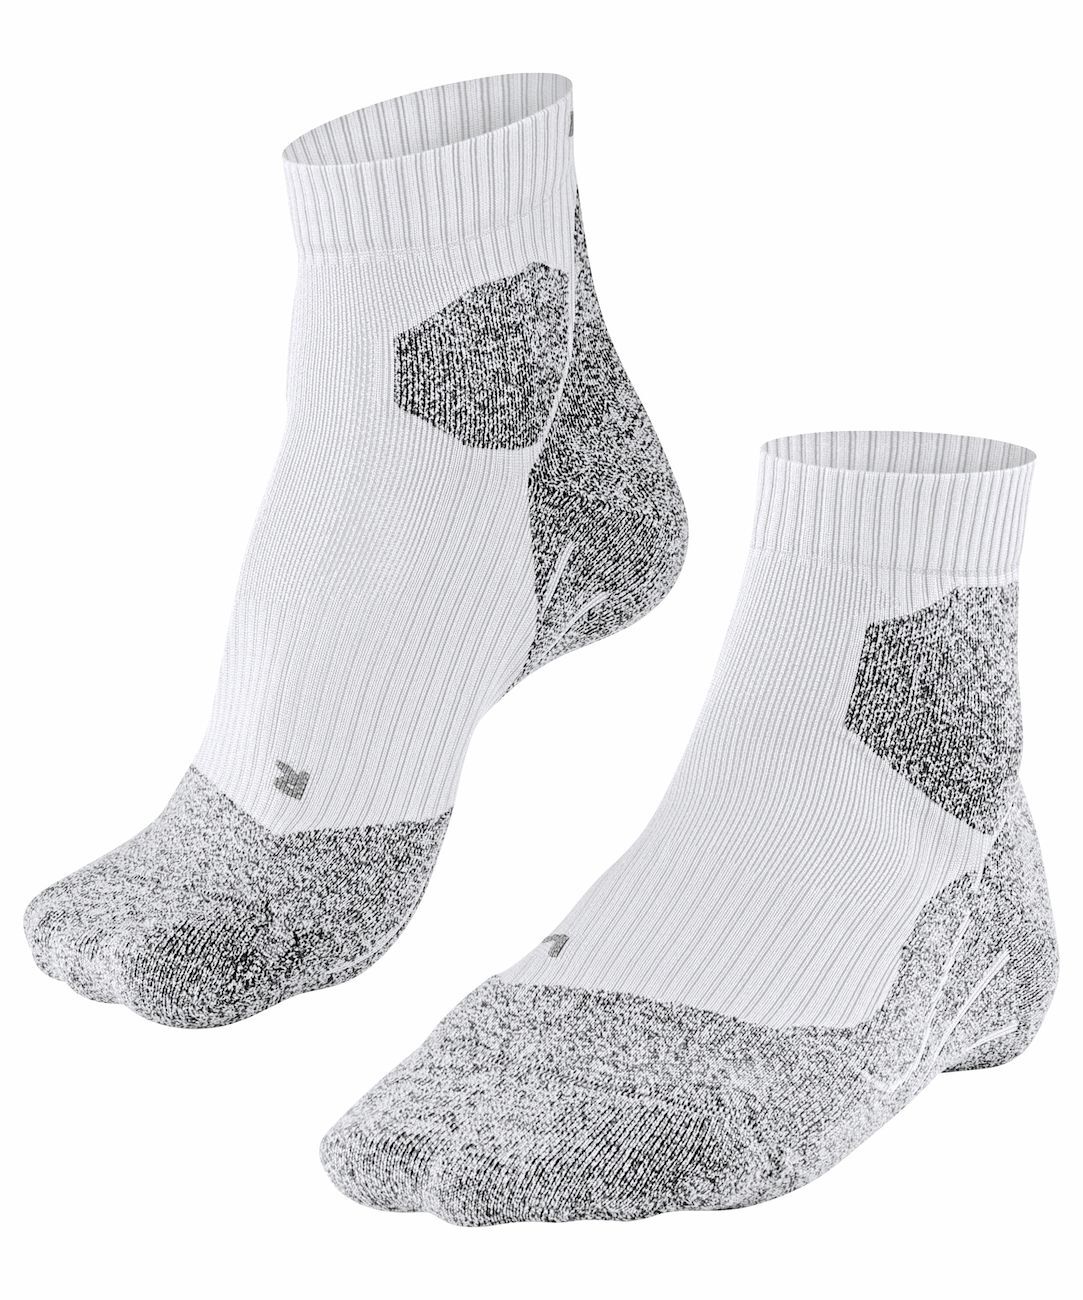 Falke RU Trail - Running socks - Men's